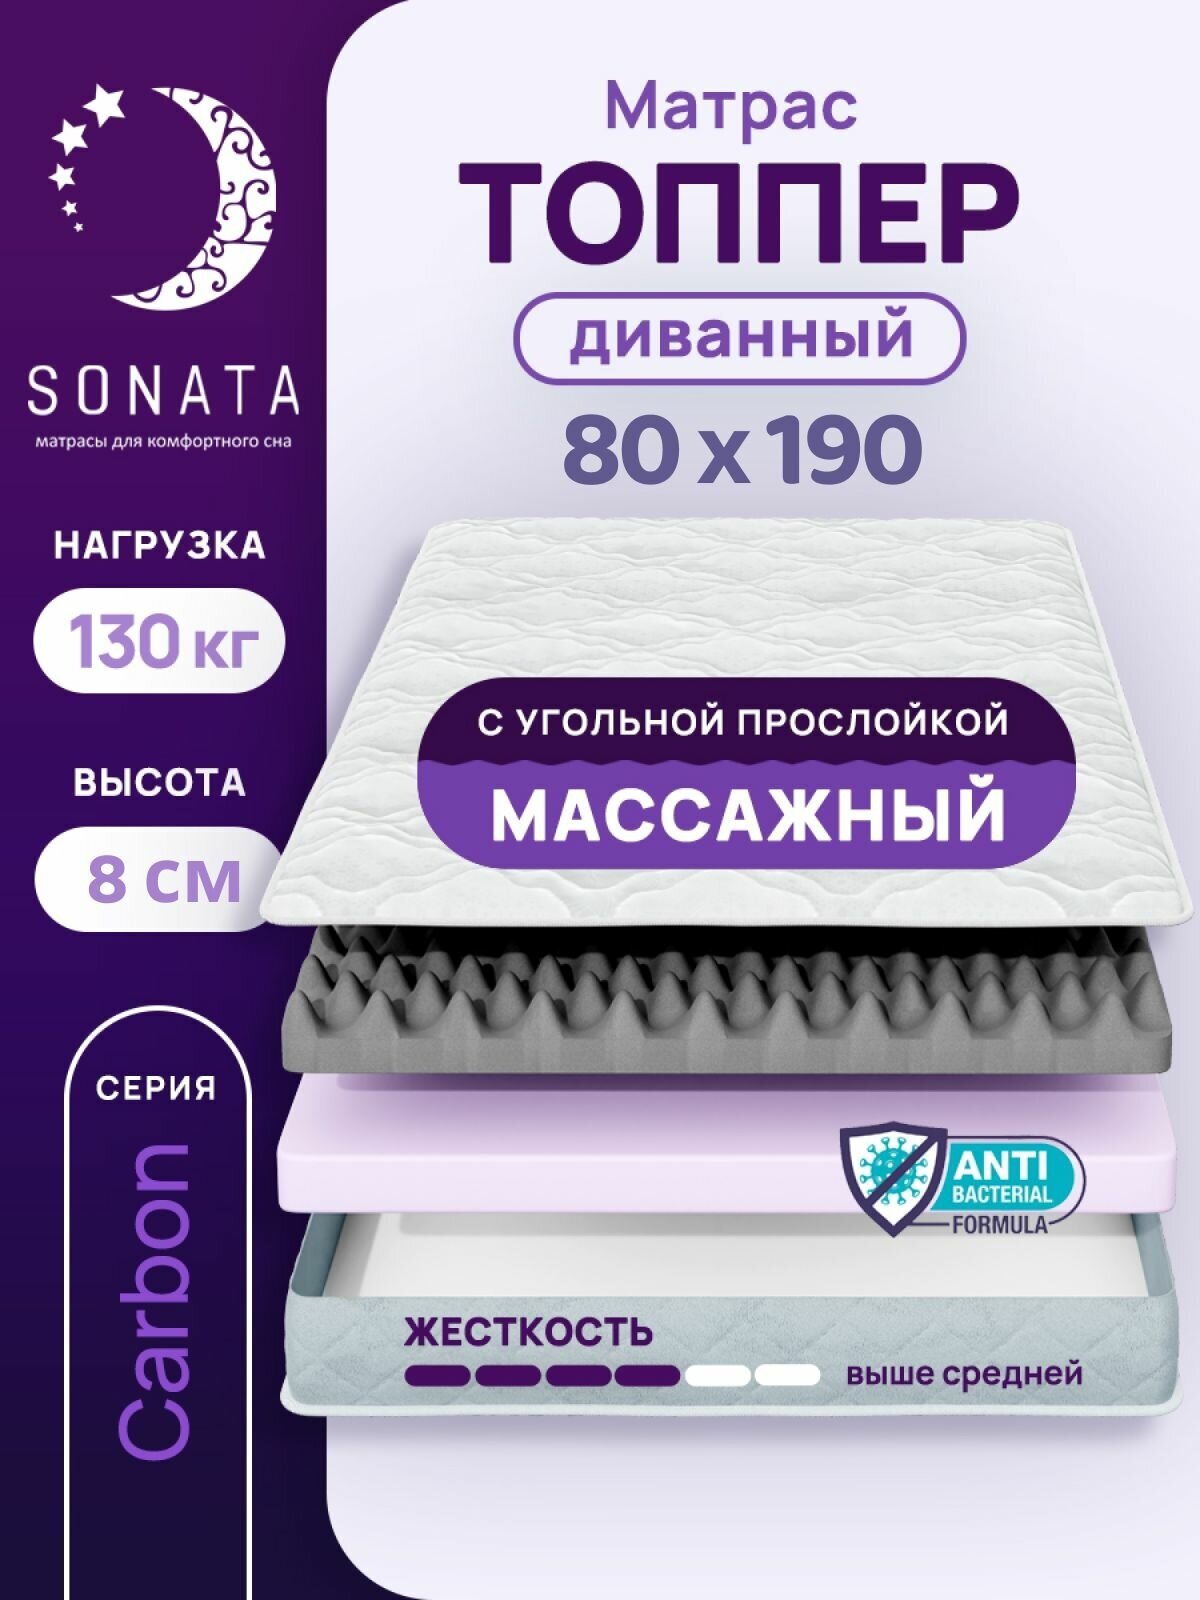 Топпер матрас 80х190 см SONATA, ортопедический, беспружинный, односпальный, тонкий матрац для дивана, кровати, высота 8 см с массажным эффектом